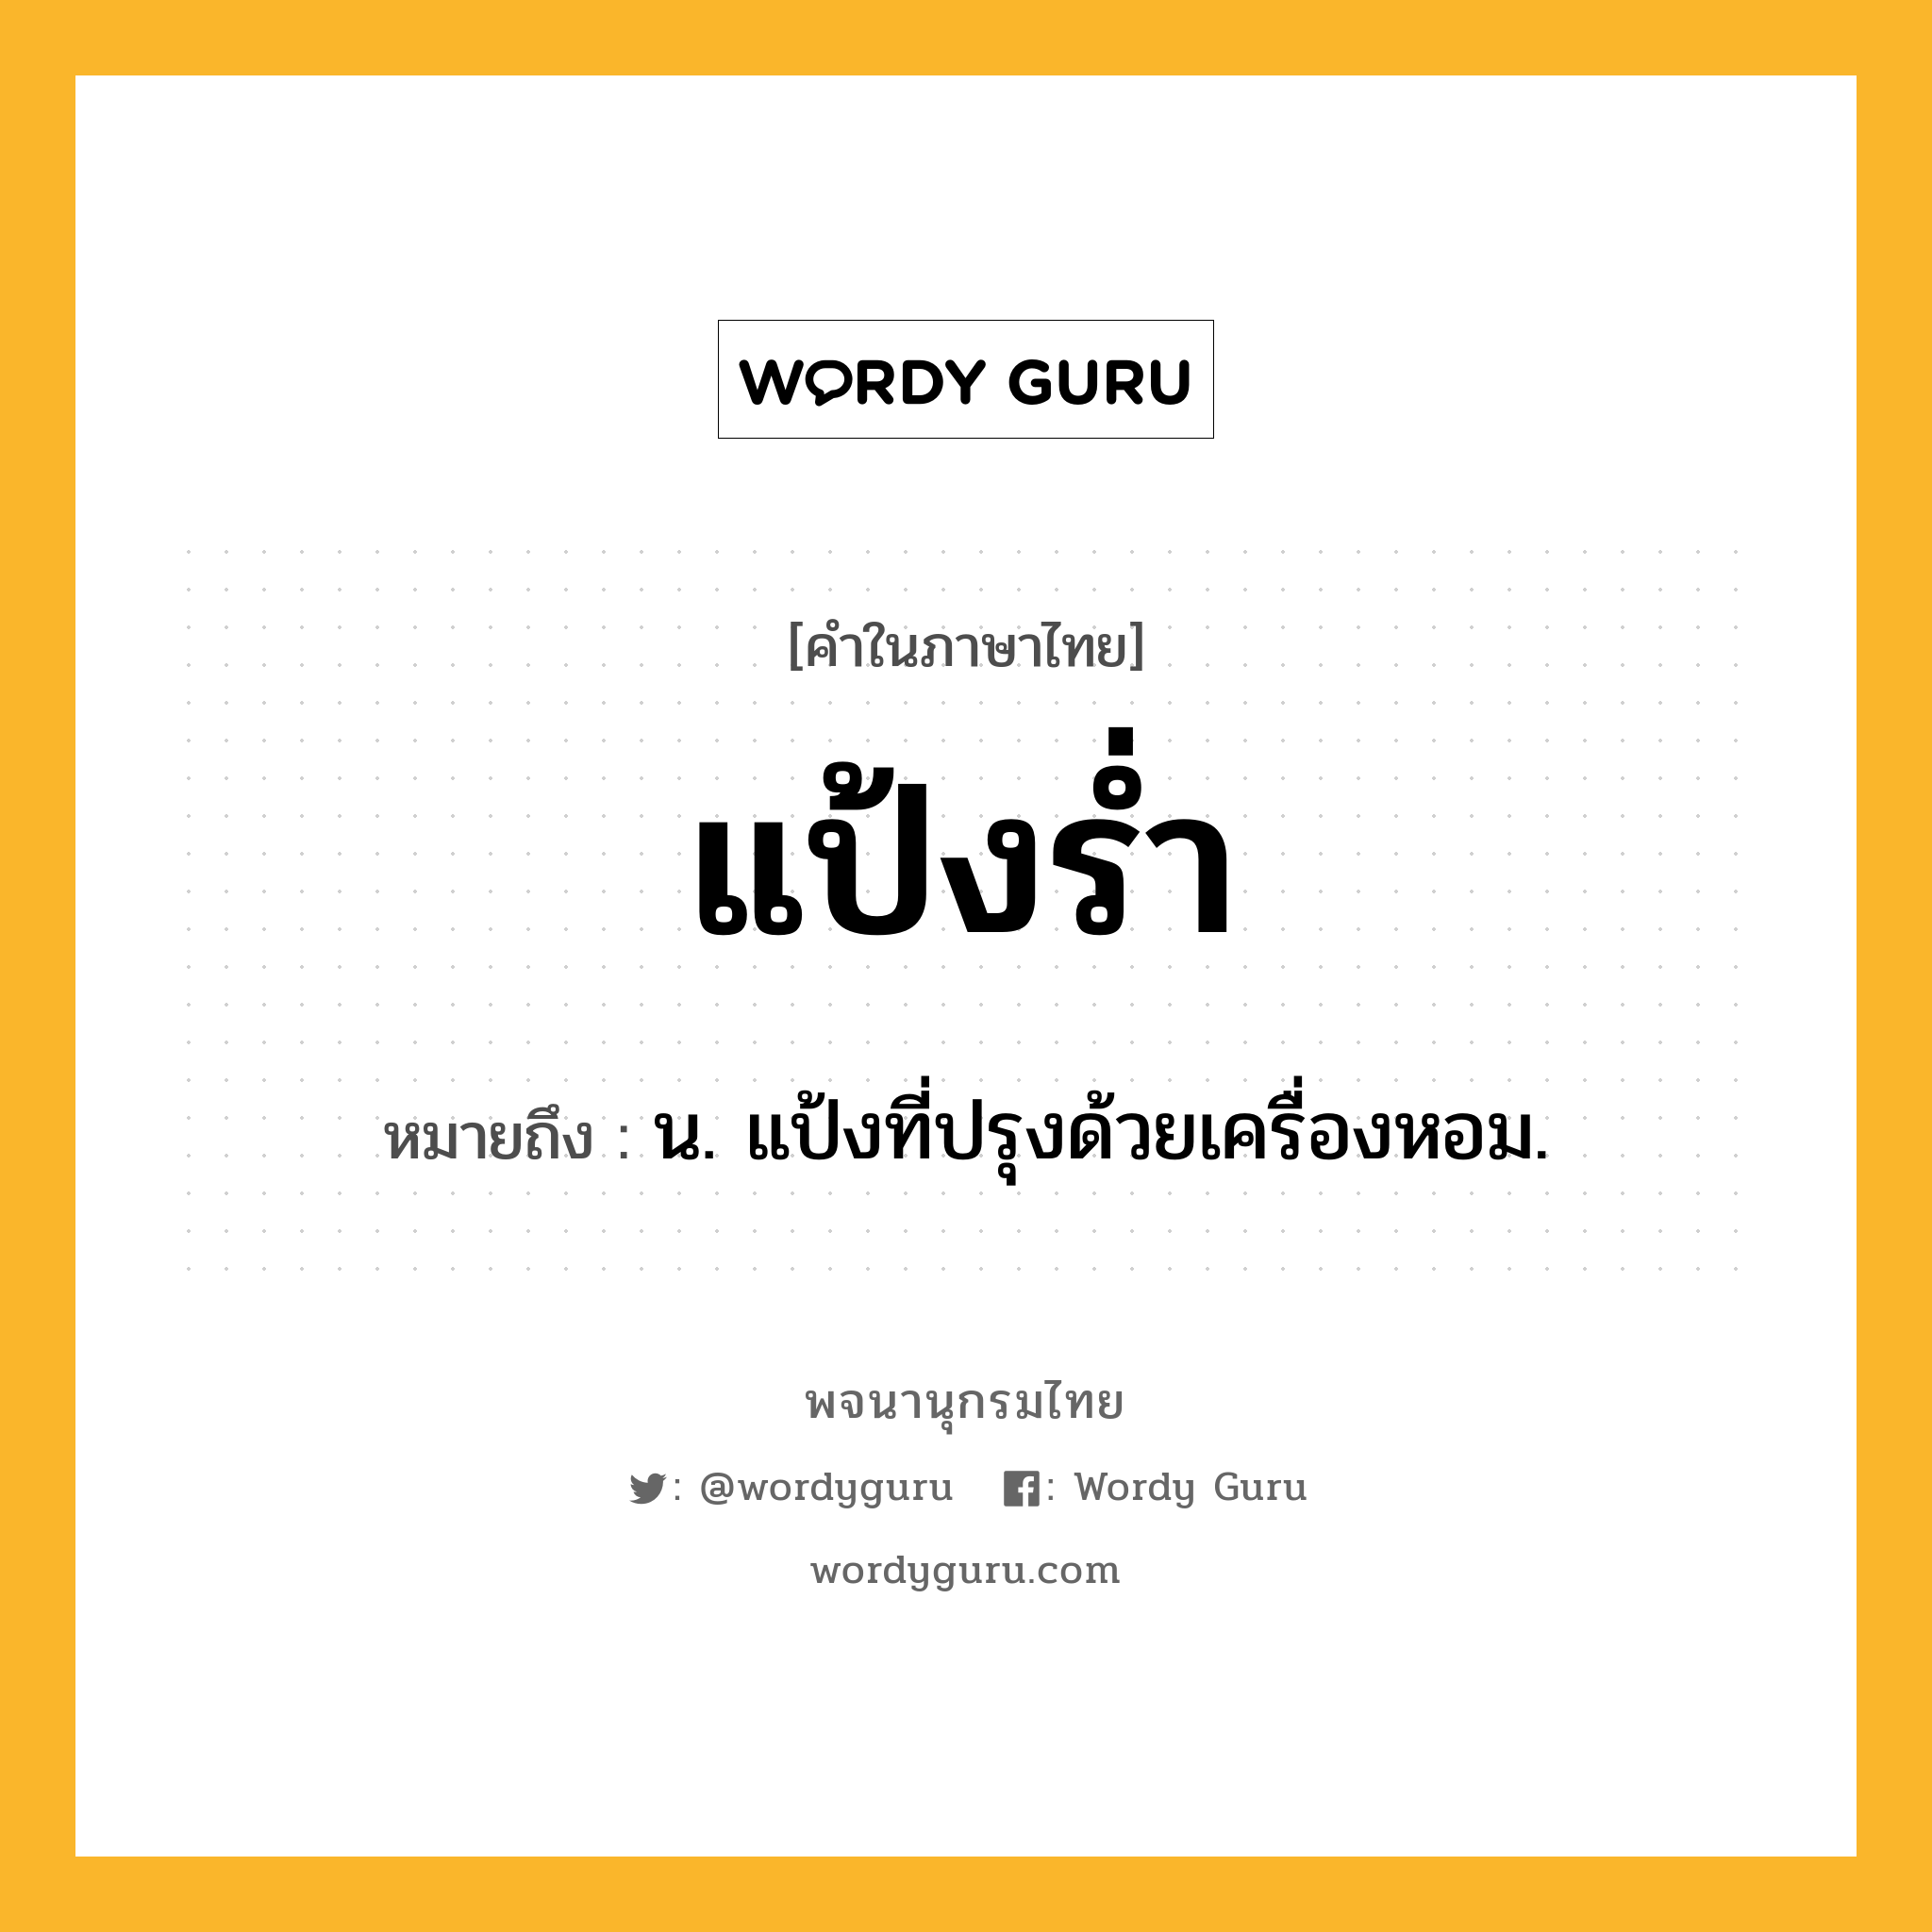 แป้งร่ำ หมายถึงอะไร?, คำในภาษาไทย แป้งร่ำ หมายถึง น. แป้งที่ปรุงด้วยเครื่องหอม.